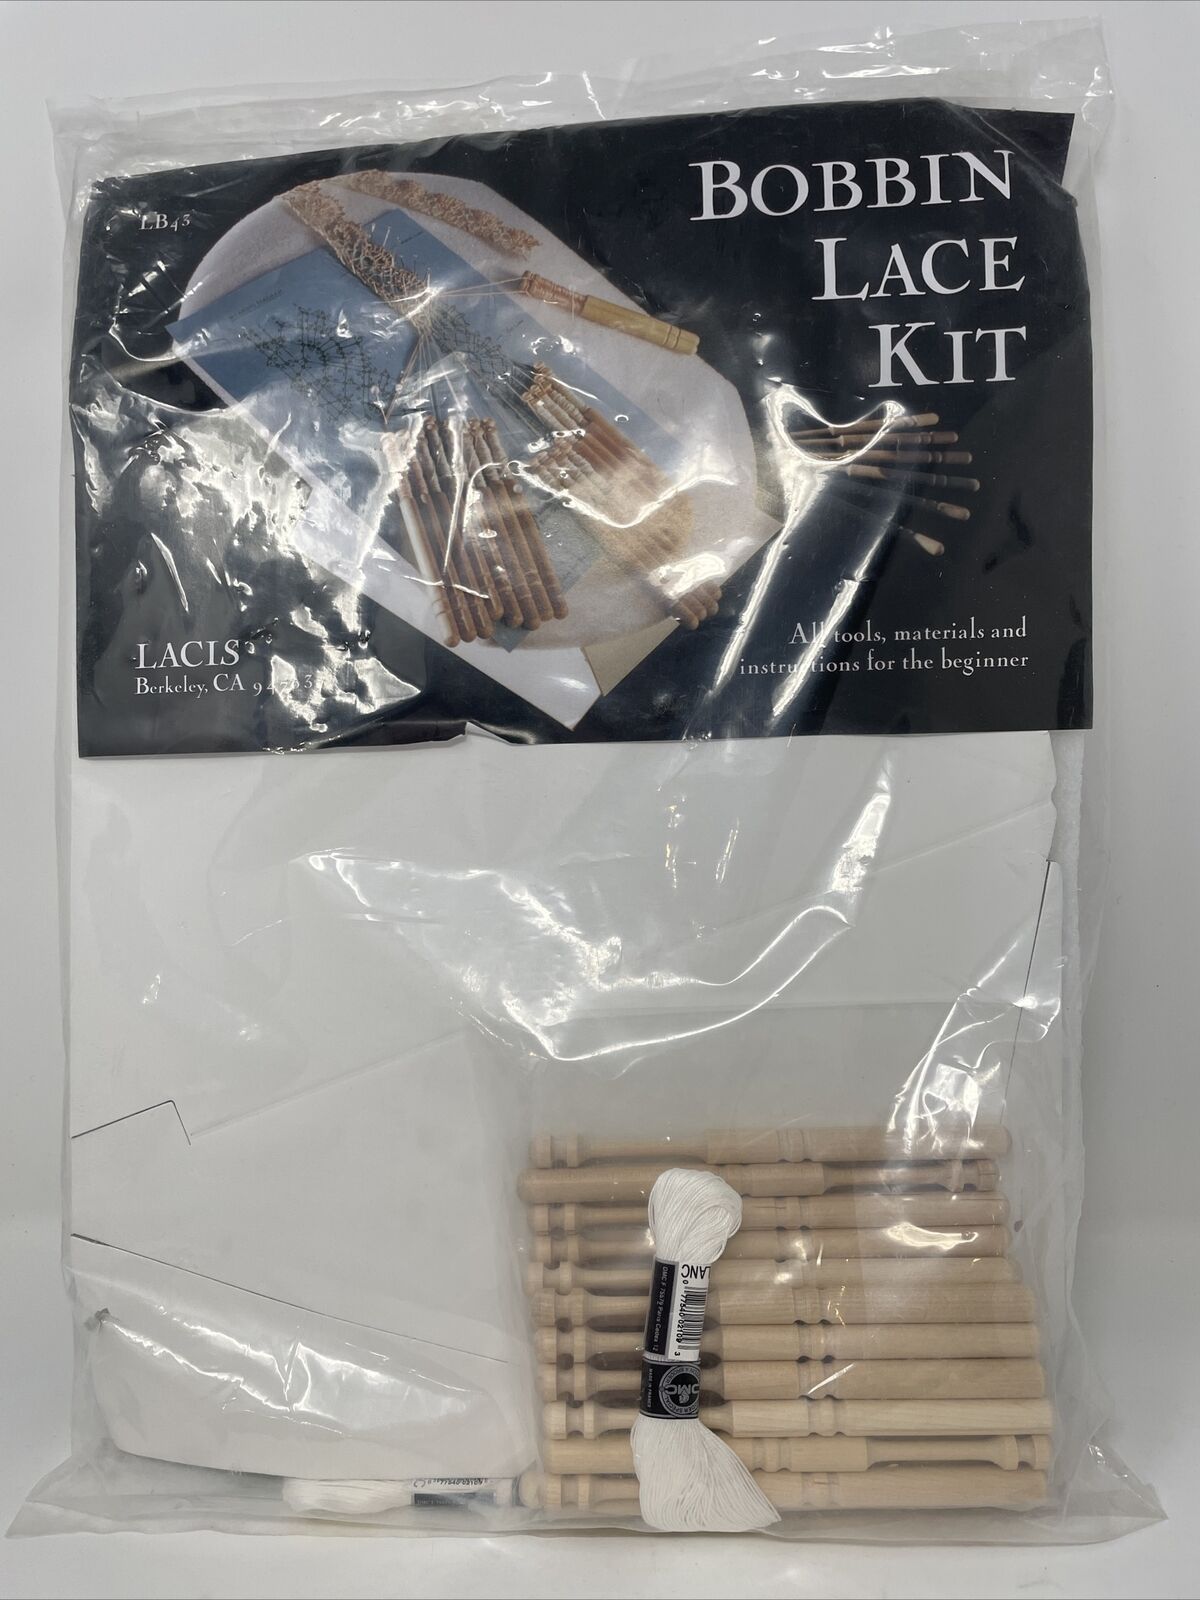 New Bobbin Lace Kit Lb 43